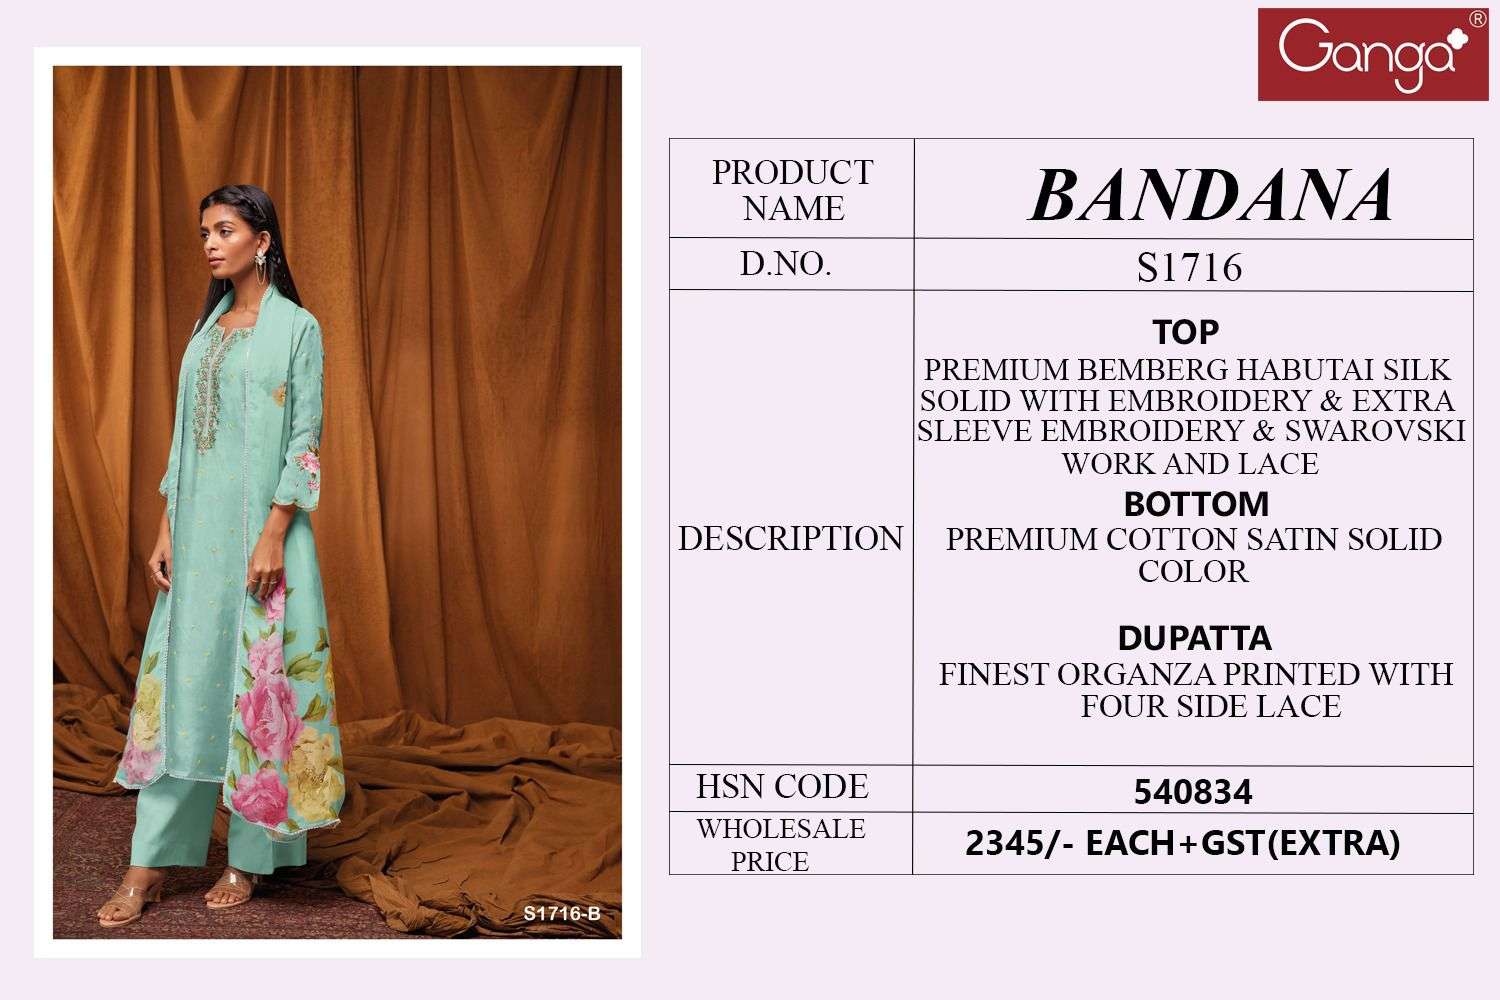 ganga bandana 1716 series party wear salwar kameez dress material new catalogue surat